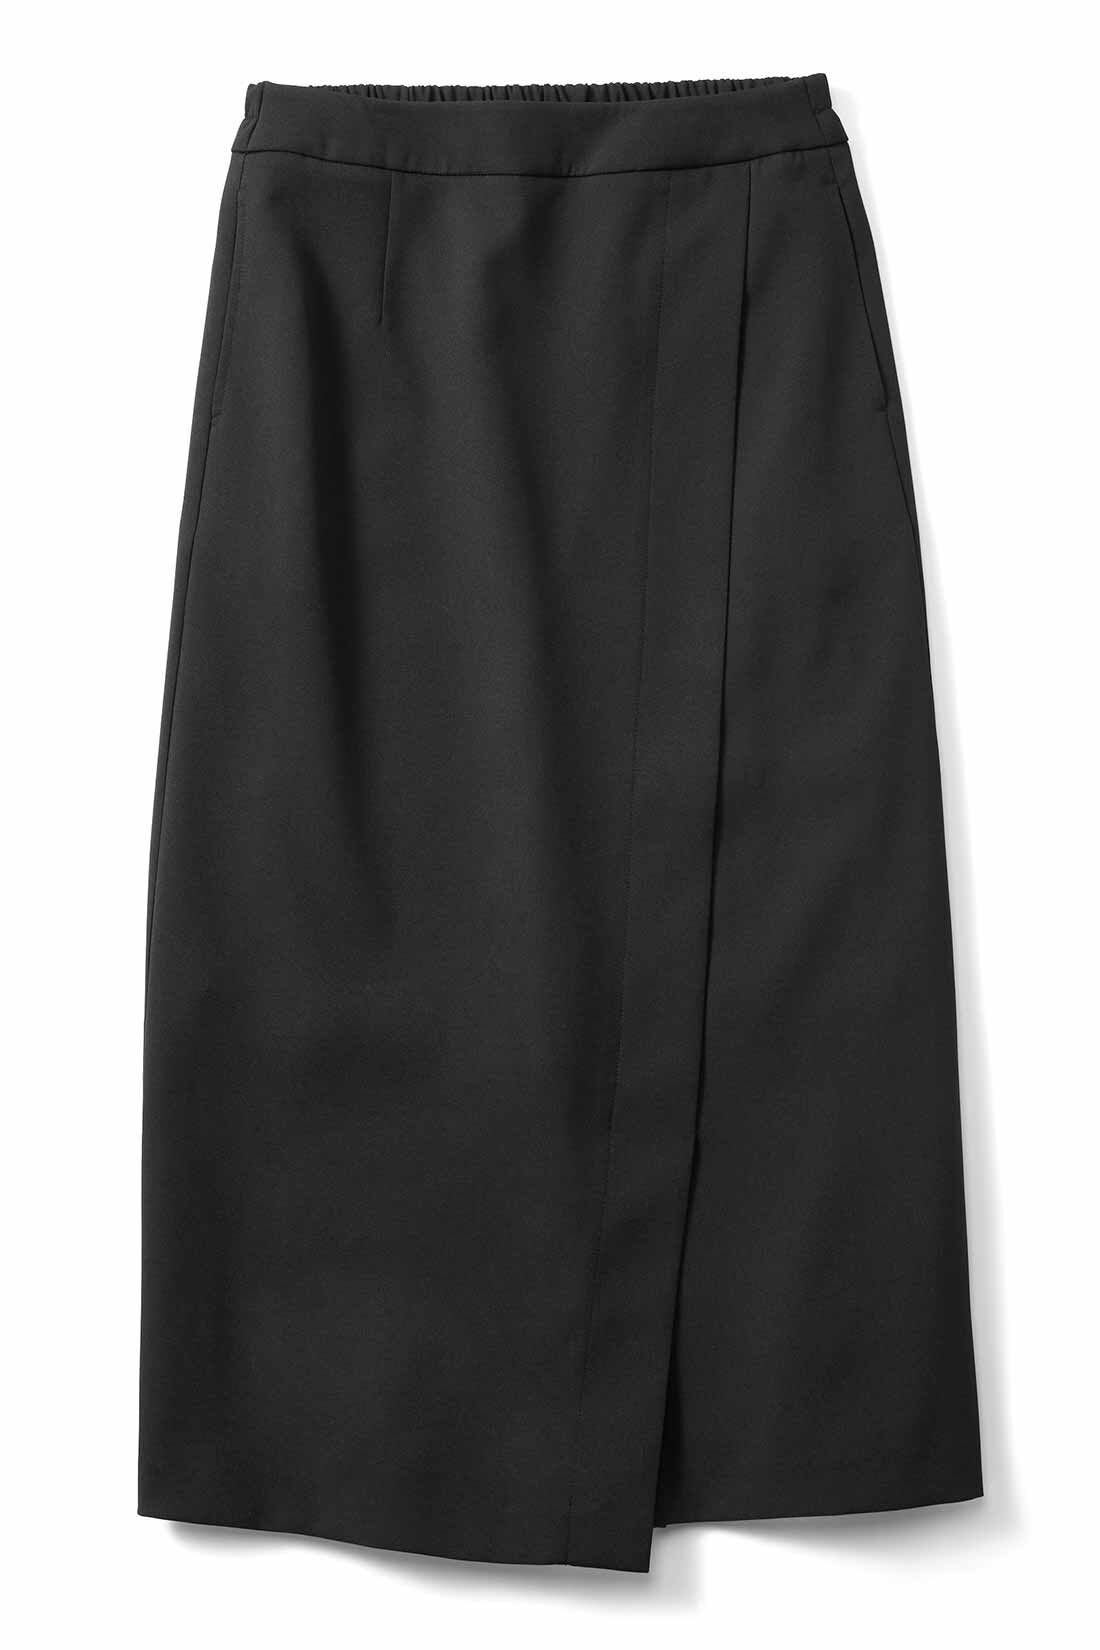 IEDIT|IEDIT[イディット]　伸びやかなダブルクロス素材のフロント切り替えIラインスカート〈ブラック〉|〈ブラック〉